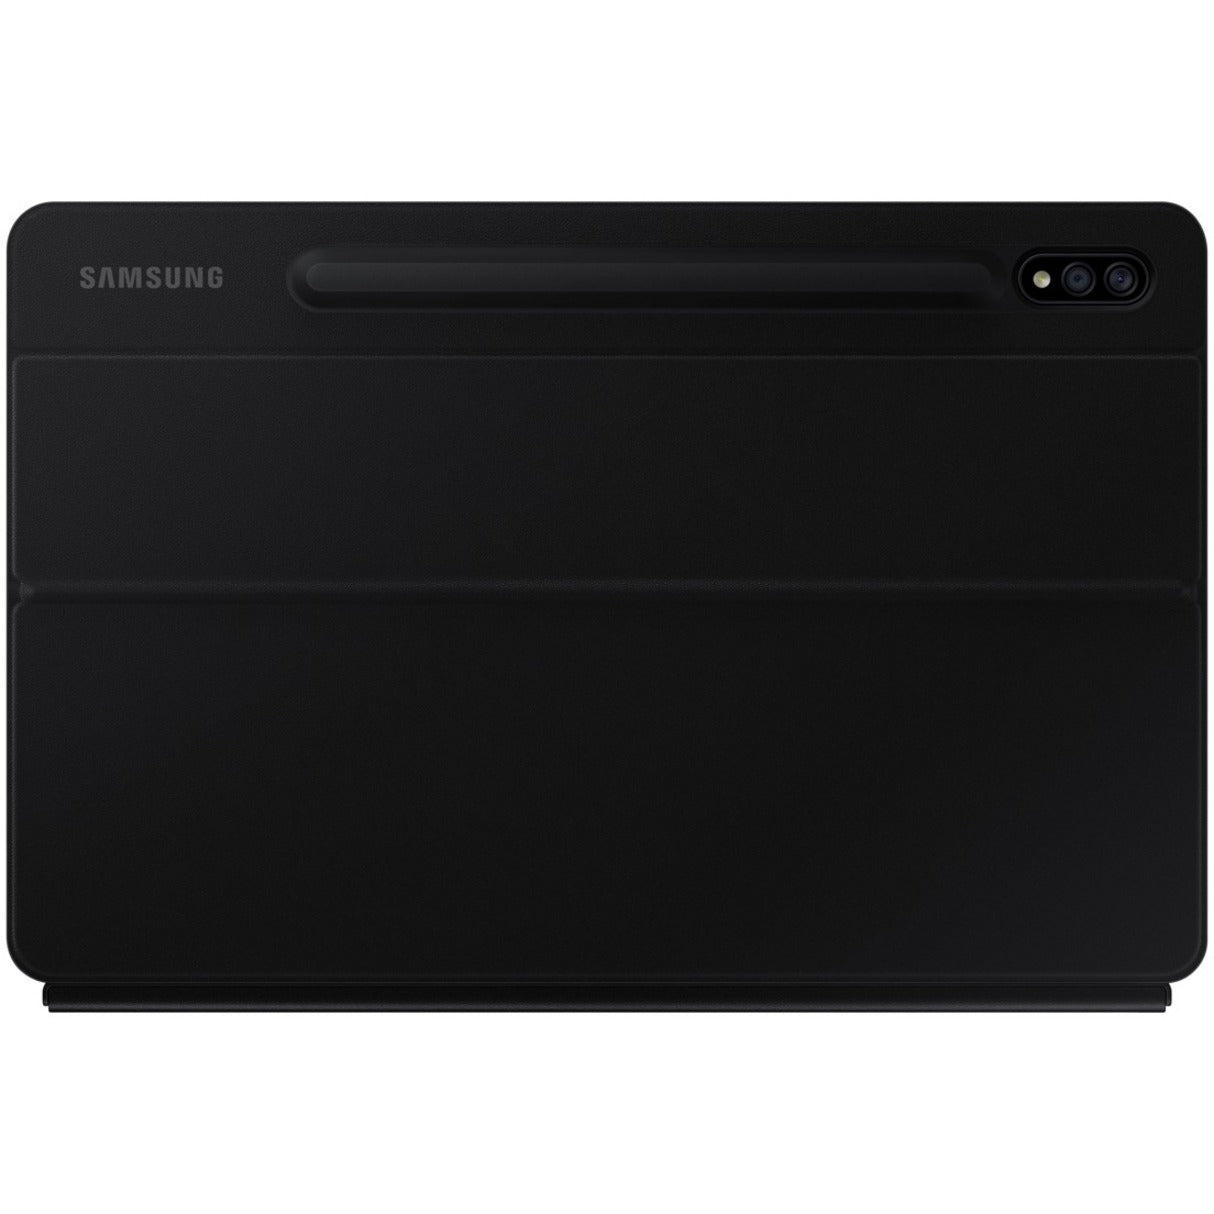 Samsung EF-DT870UBEGUJ Galaxy Tab S7 Book Cover Keyboard, Black